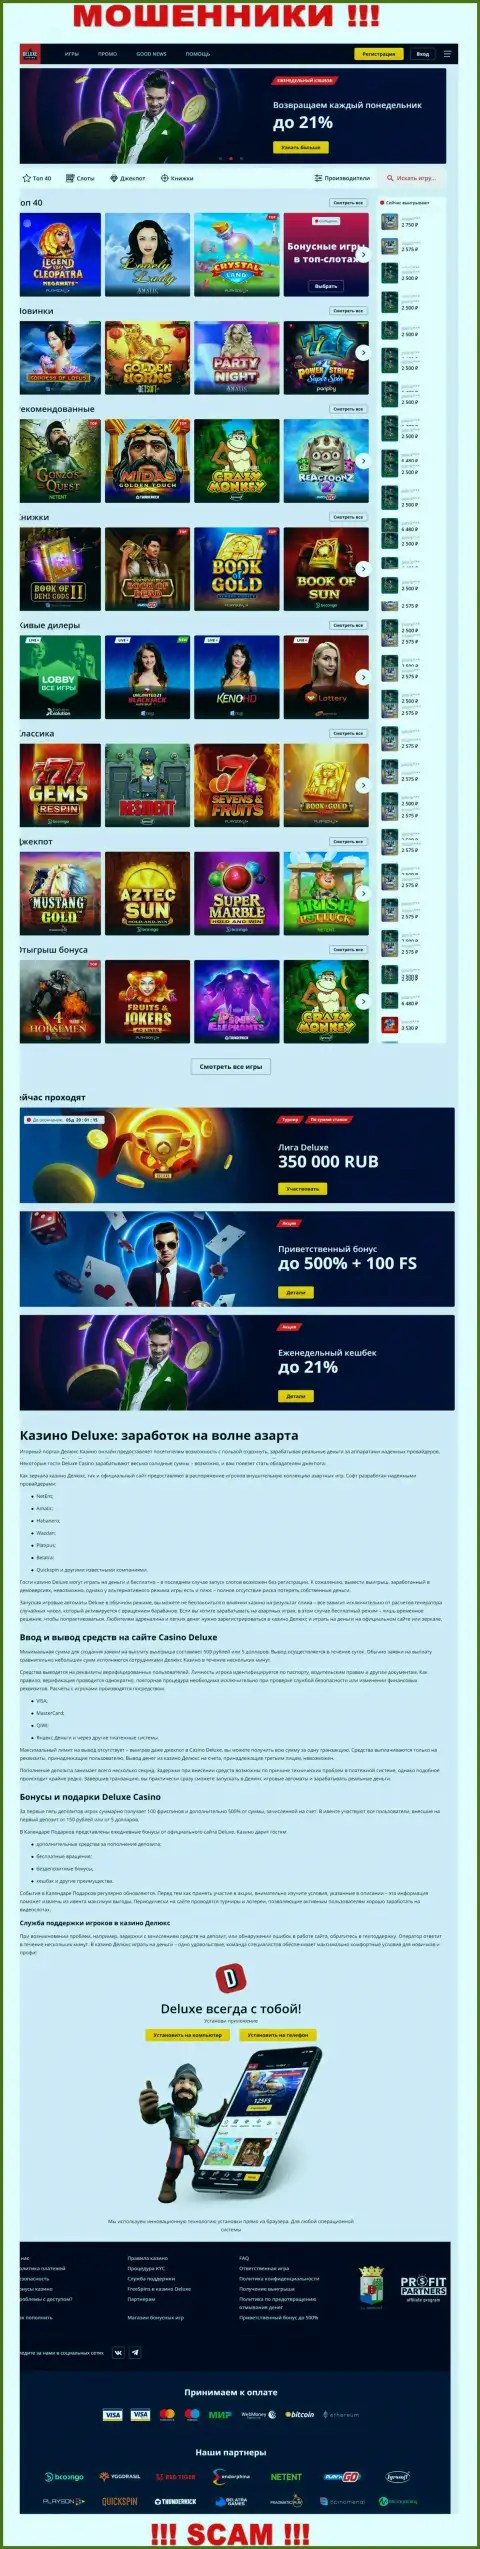 Официальная страничка компании Deluxe Casino